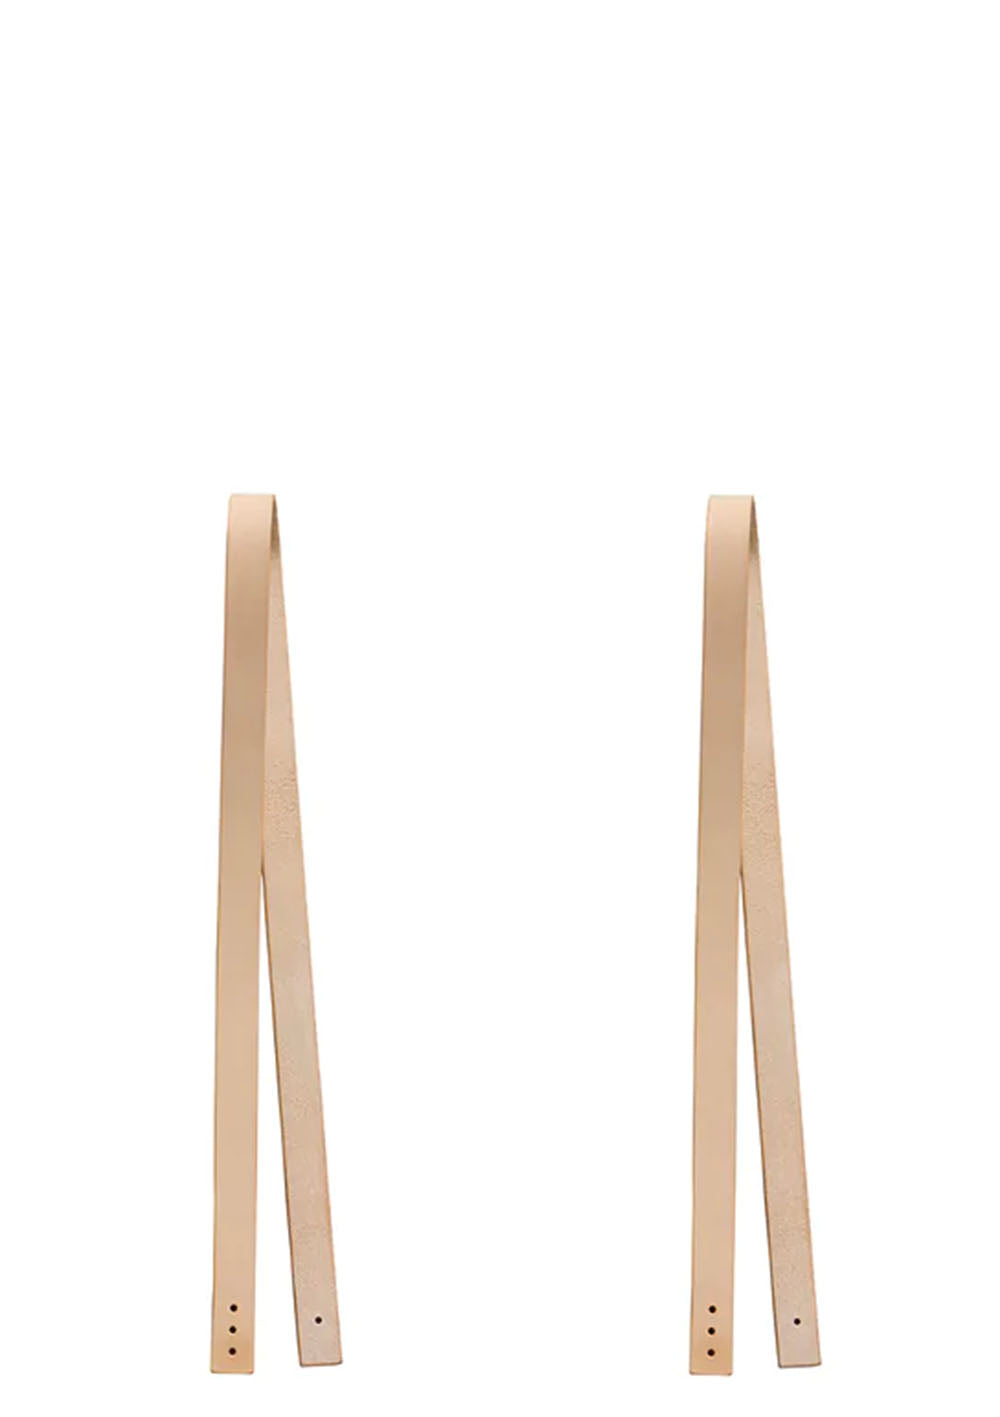 Oliver Furniture 'Wood' Lederriemen für Sitzkissen